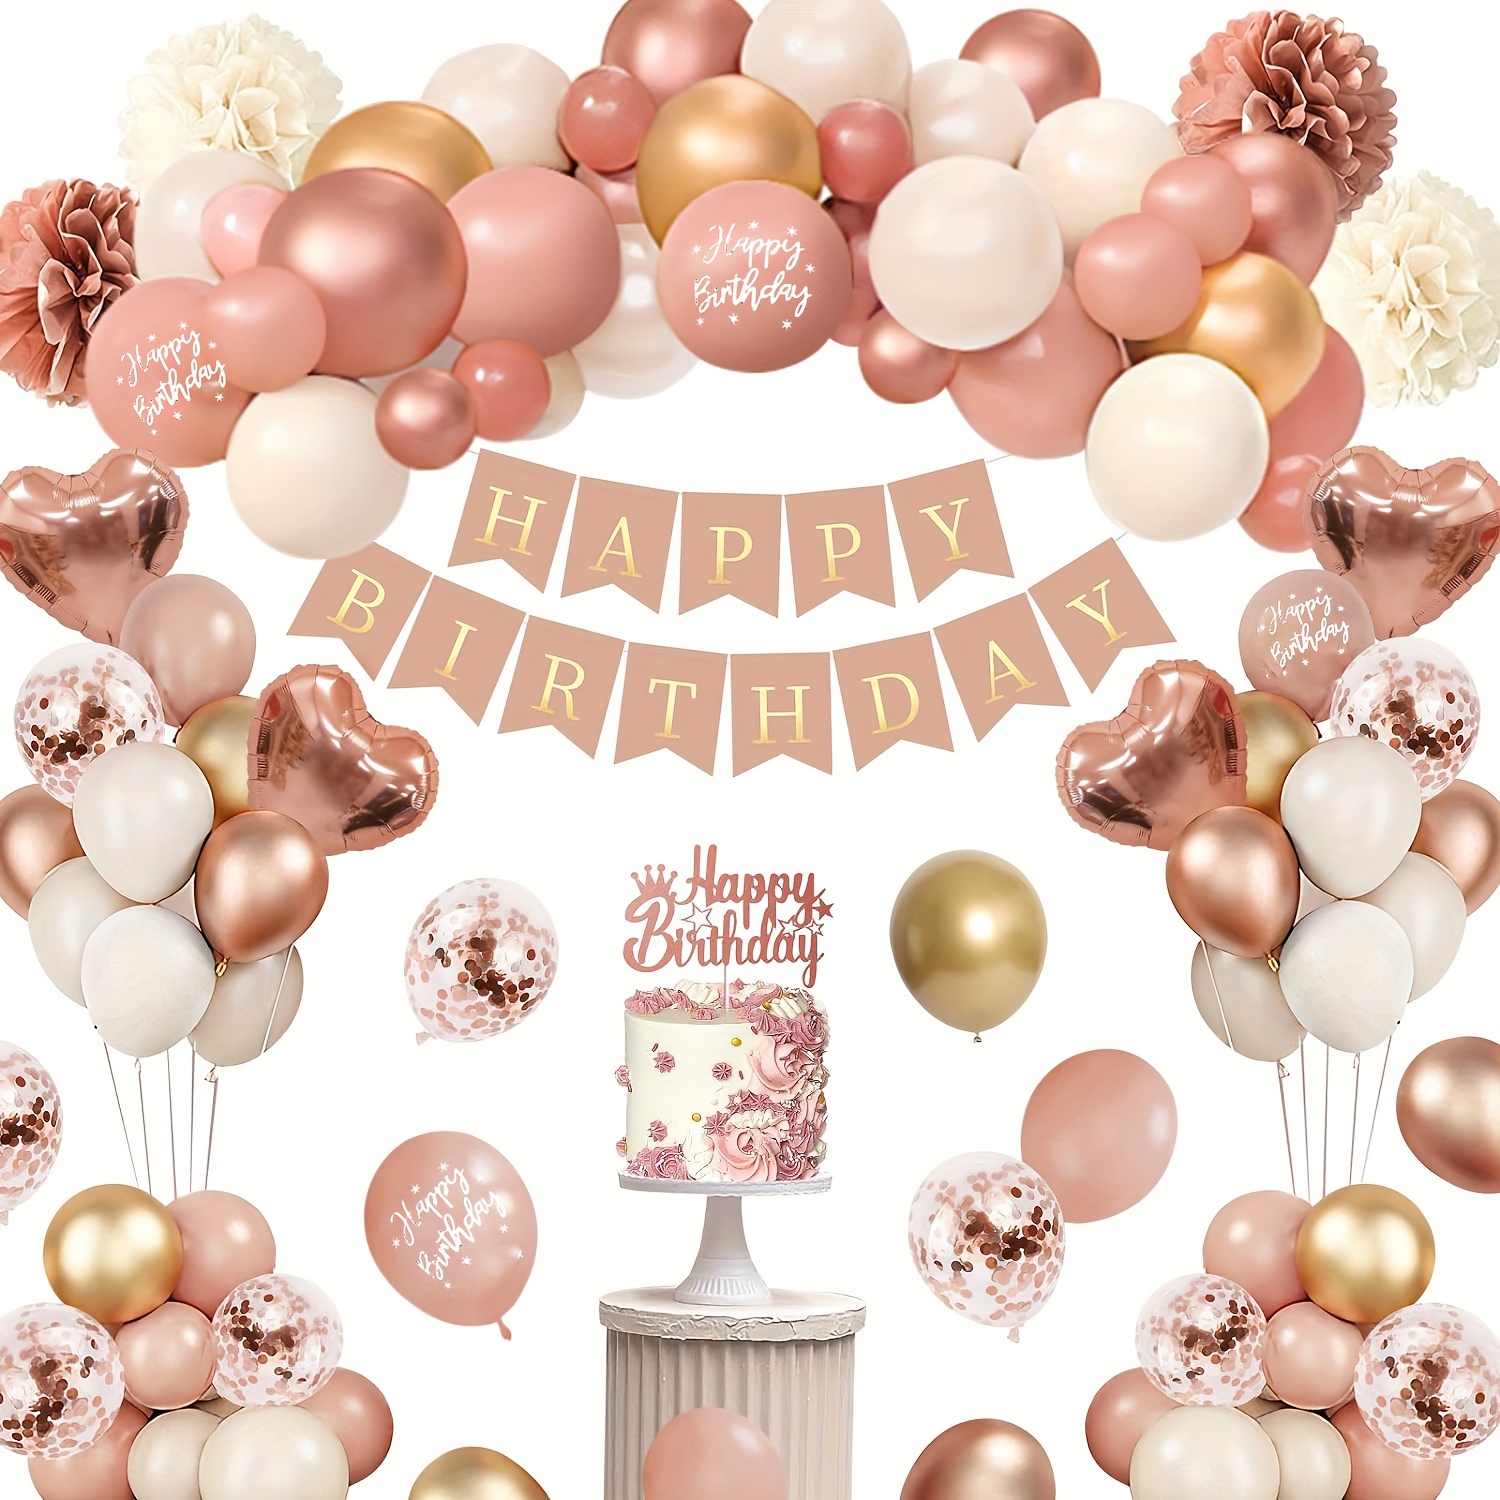 Decoraciones de cumpleaños doradas: juego de decoraciones de fiesta doradas  con pancarta de cumpleaños, globos de confeti blanco dorado, fondo de